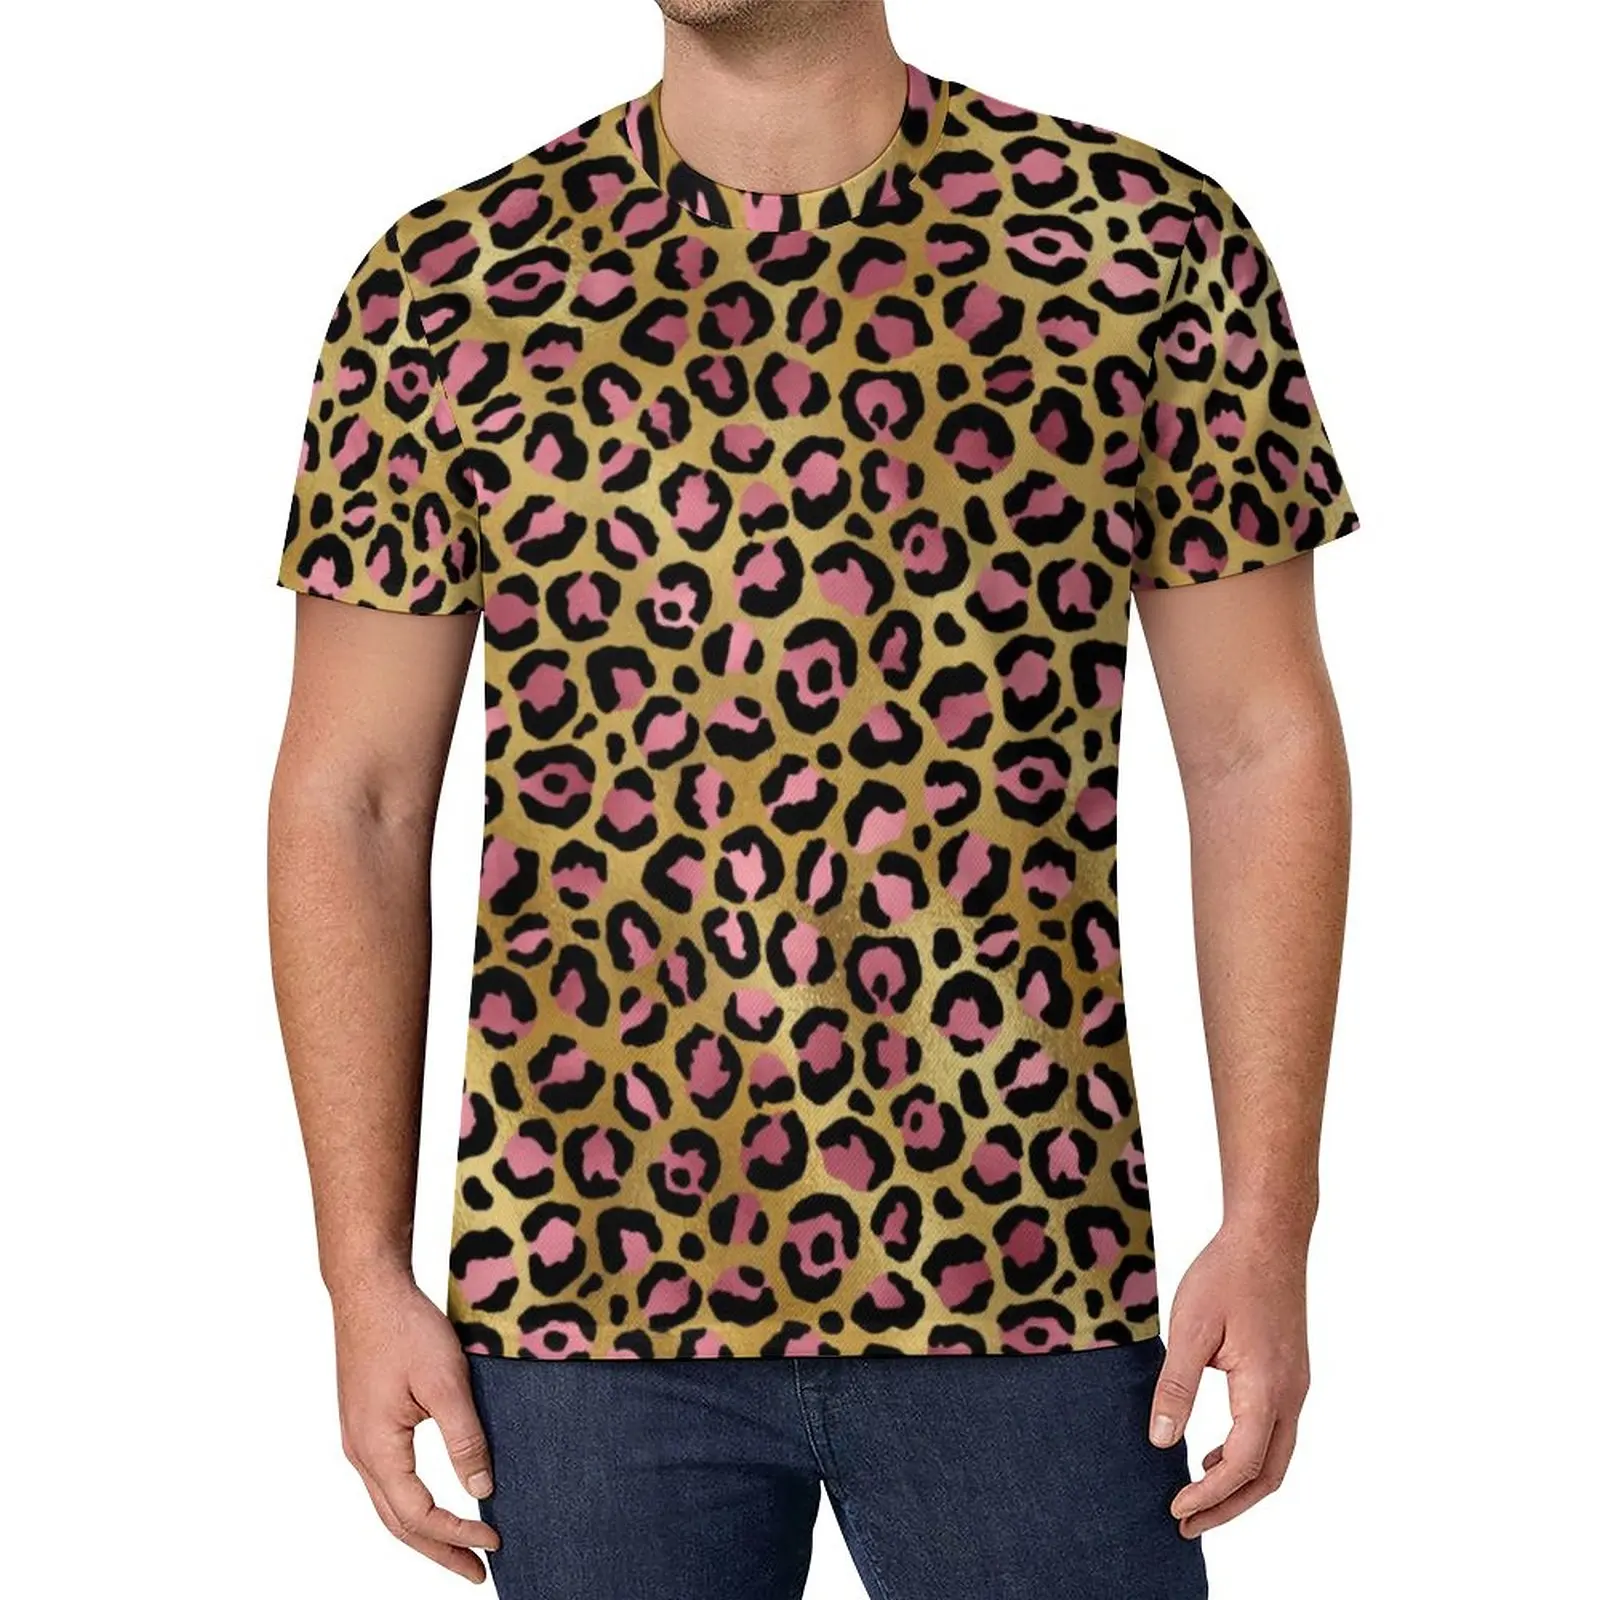 

Золотисто-розовая леопардовая футболка, мужские милые футболки с животным принтом, летняя футболка в стиле хиппи, Индивидуальные топы боль...